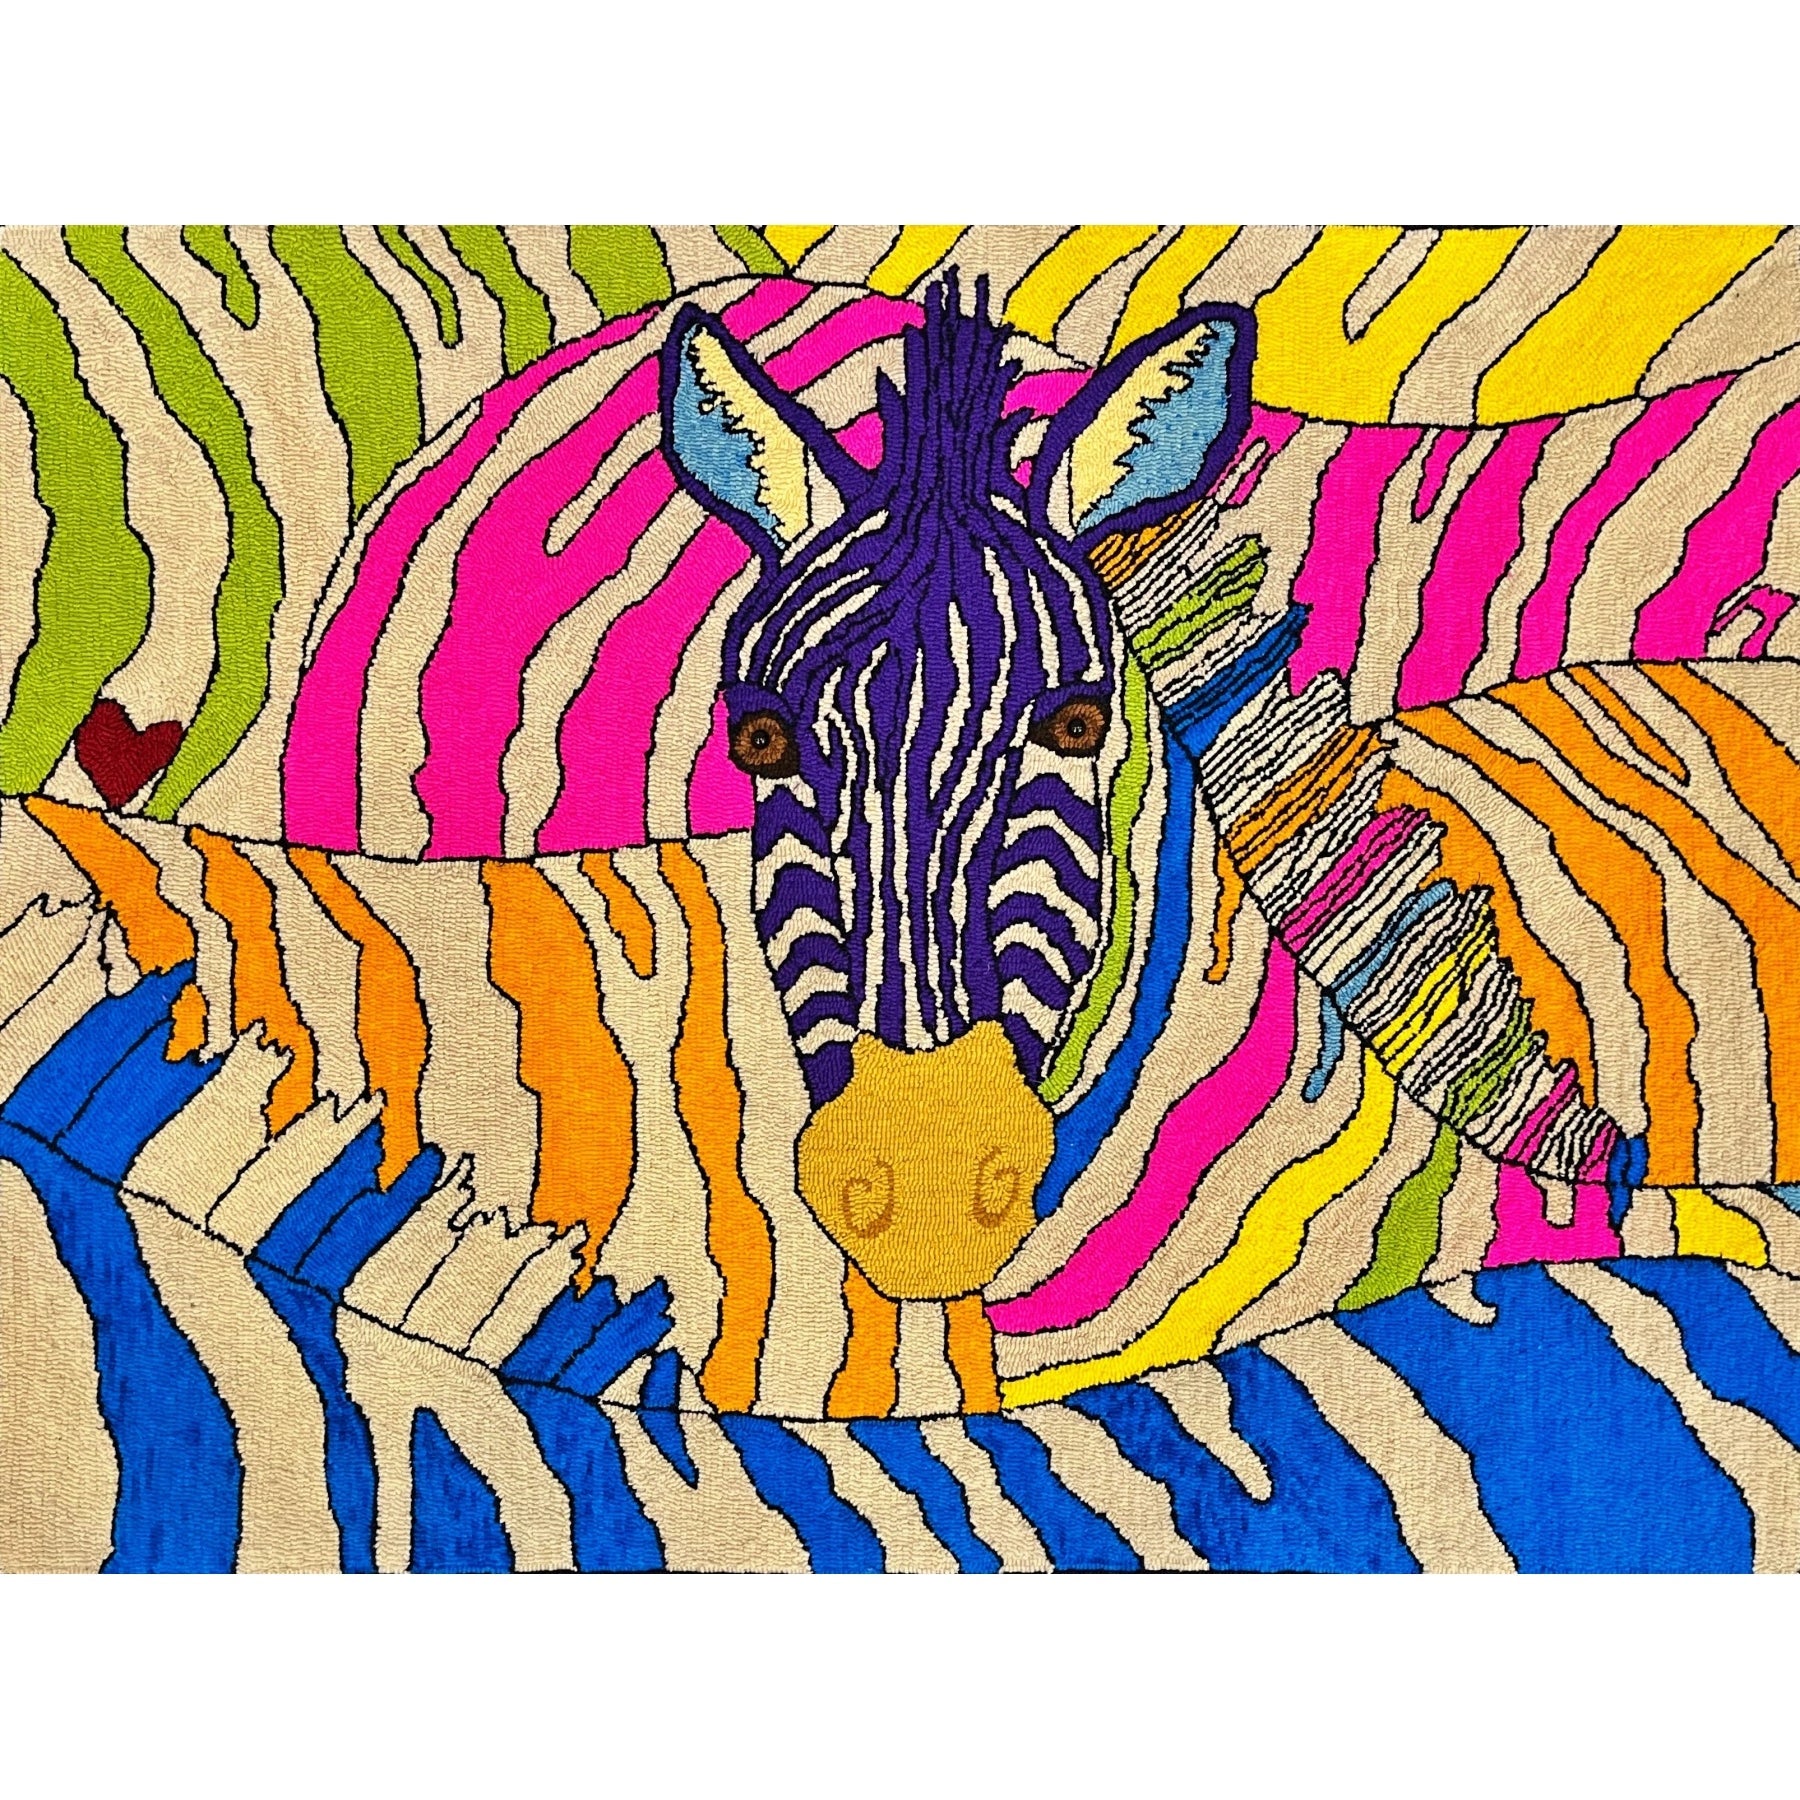 Zebra, rug hooked by Kathy Kovaric